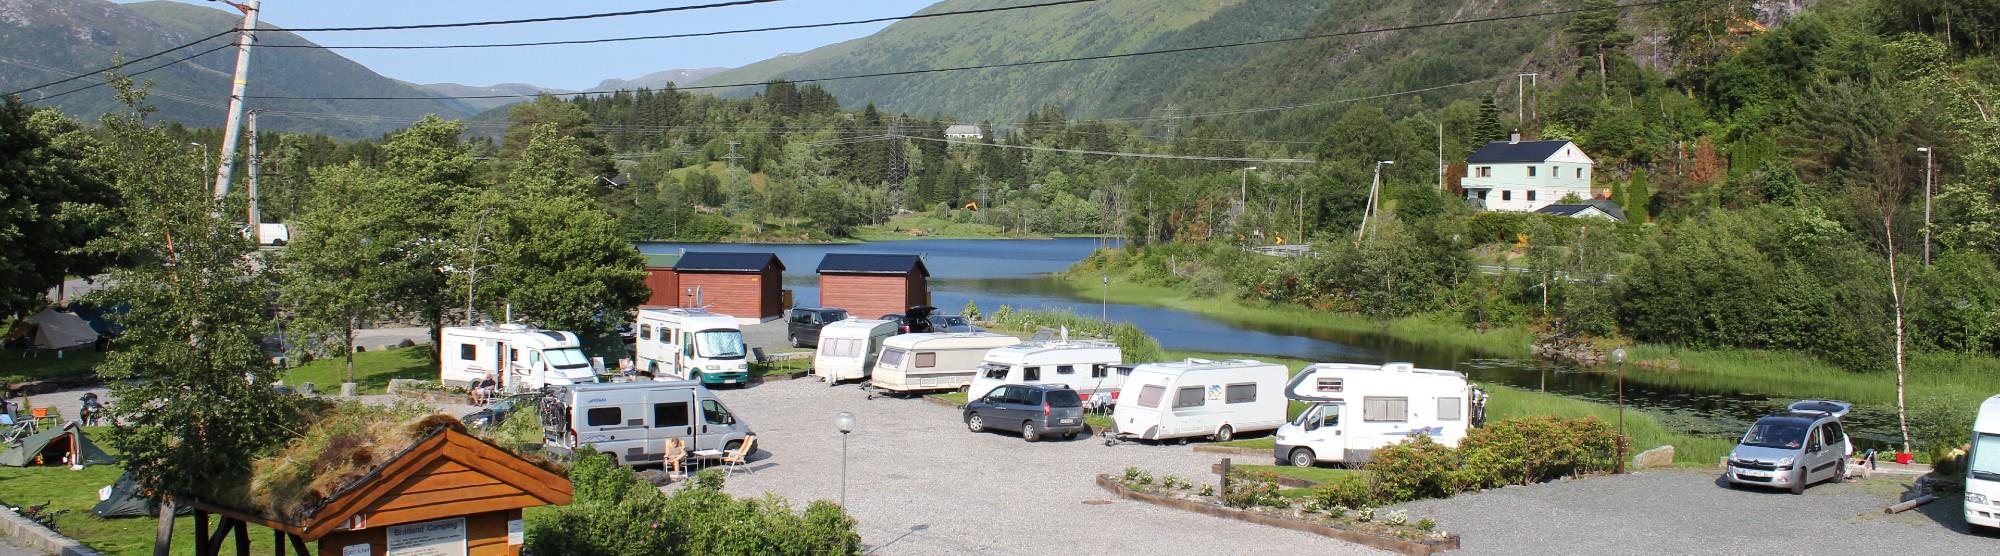 Campingplätze in Bergen, Norwegen